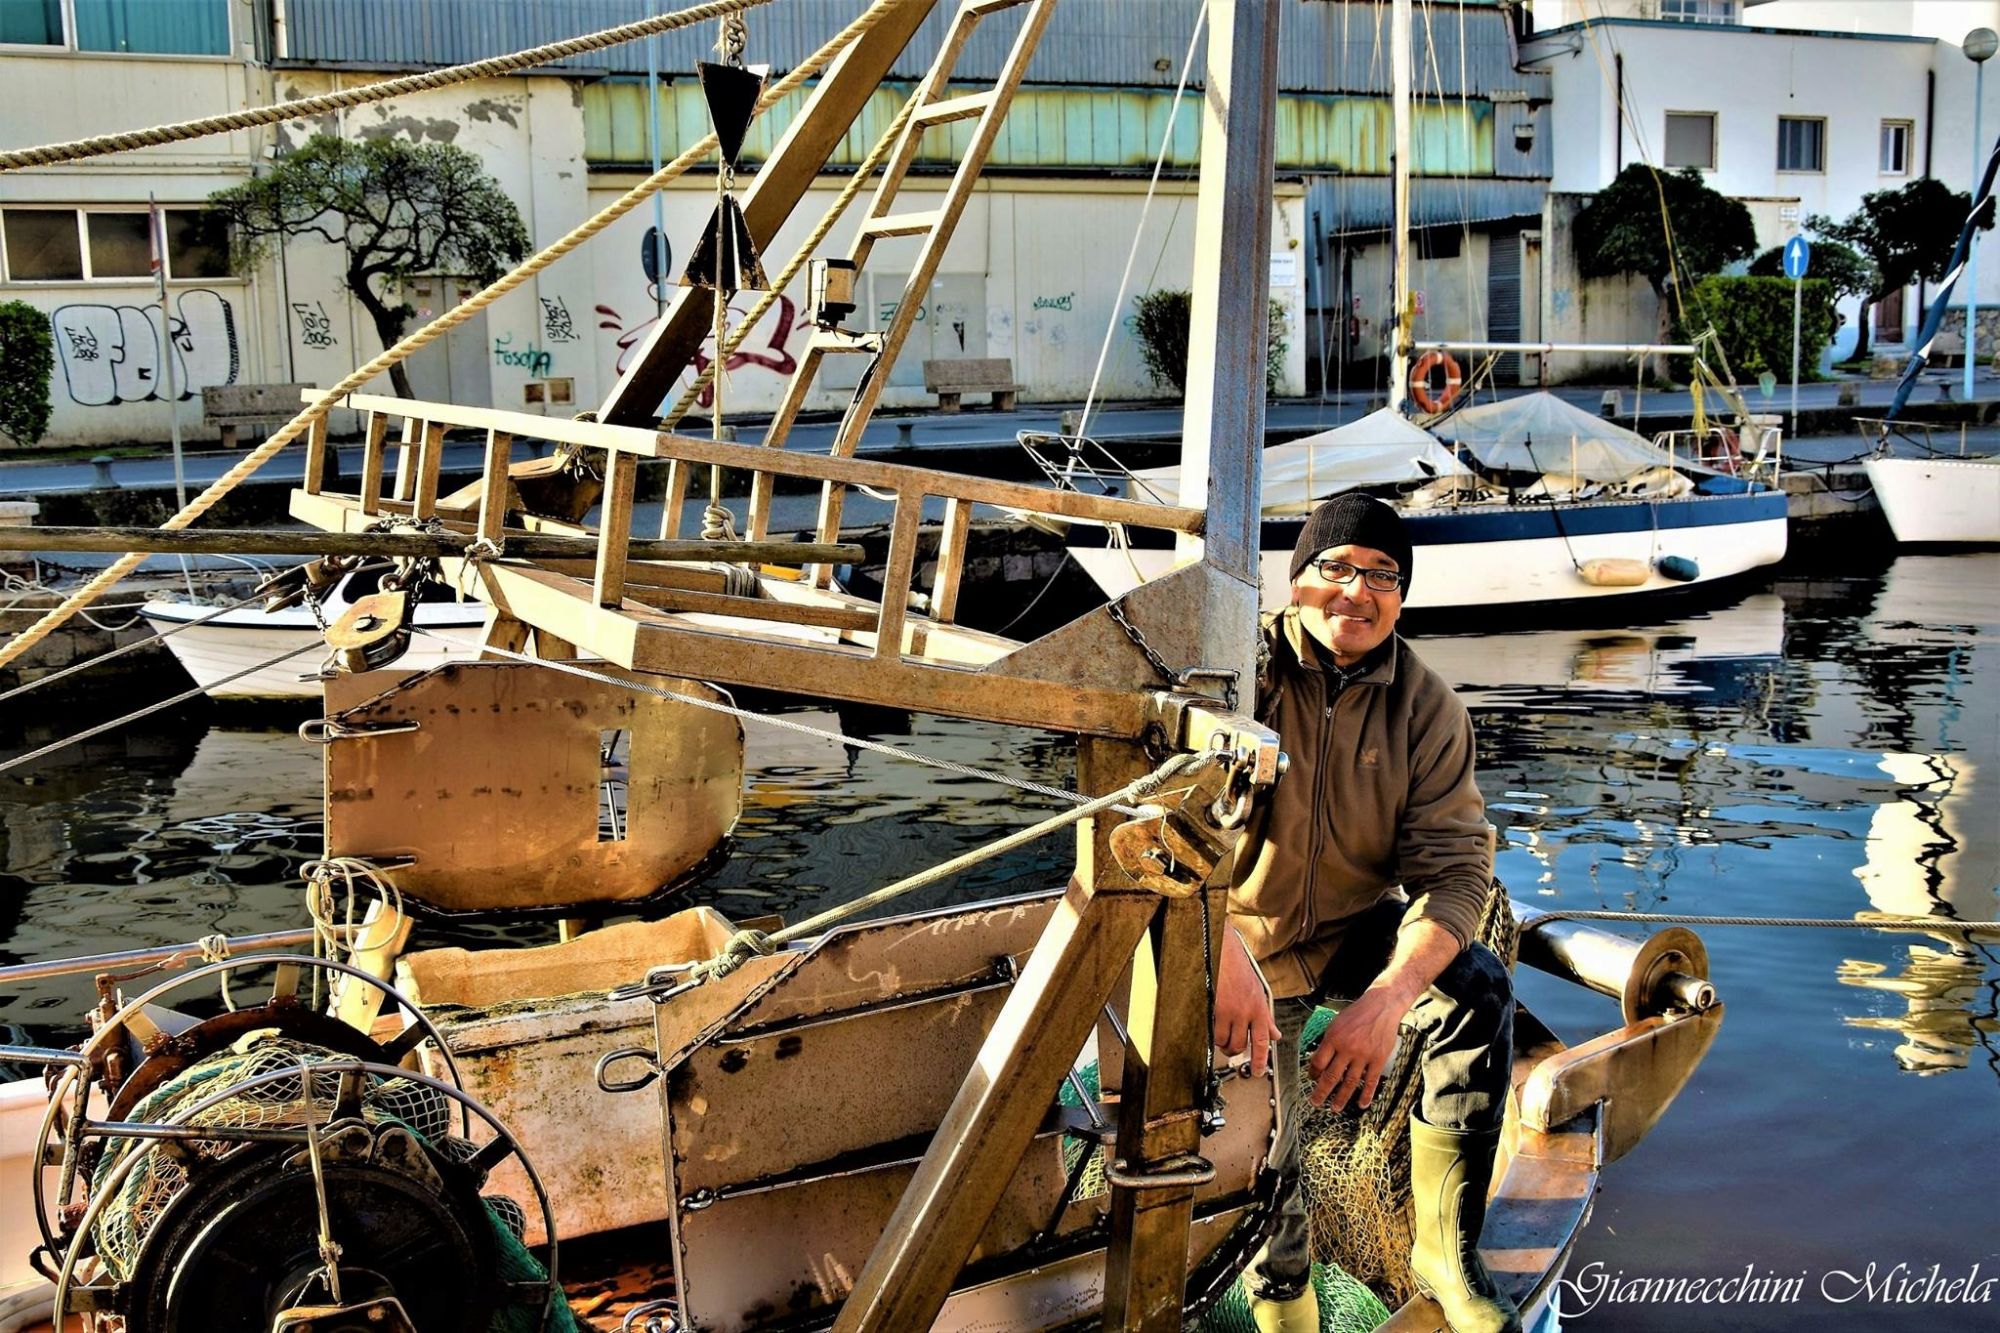 “Necessari aiuti e ristori per i pescatori di Viareggio”